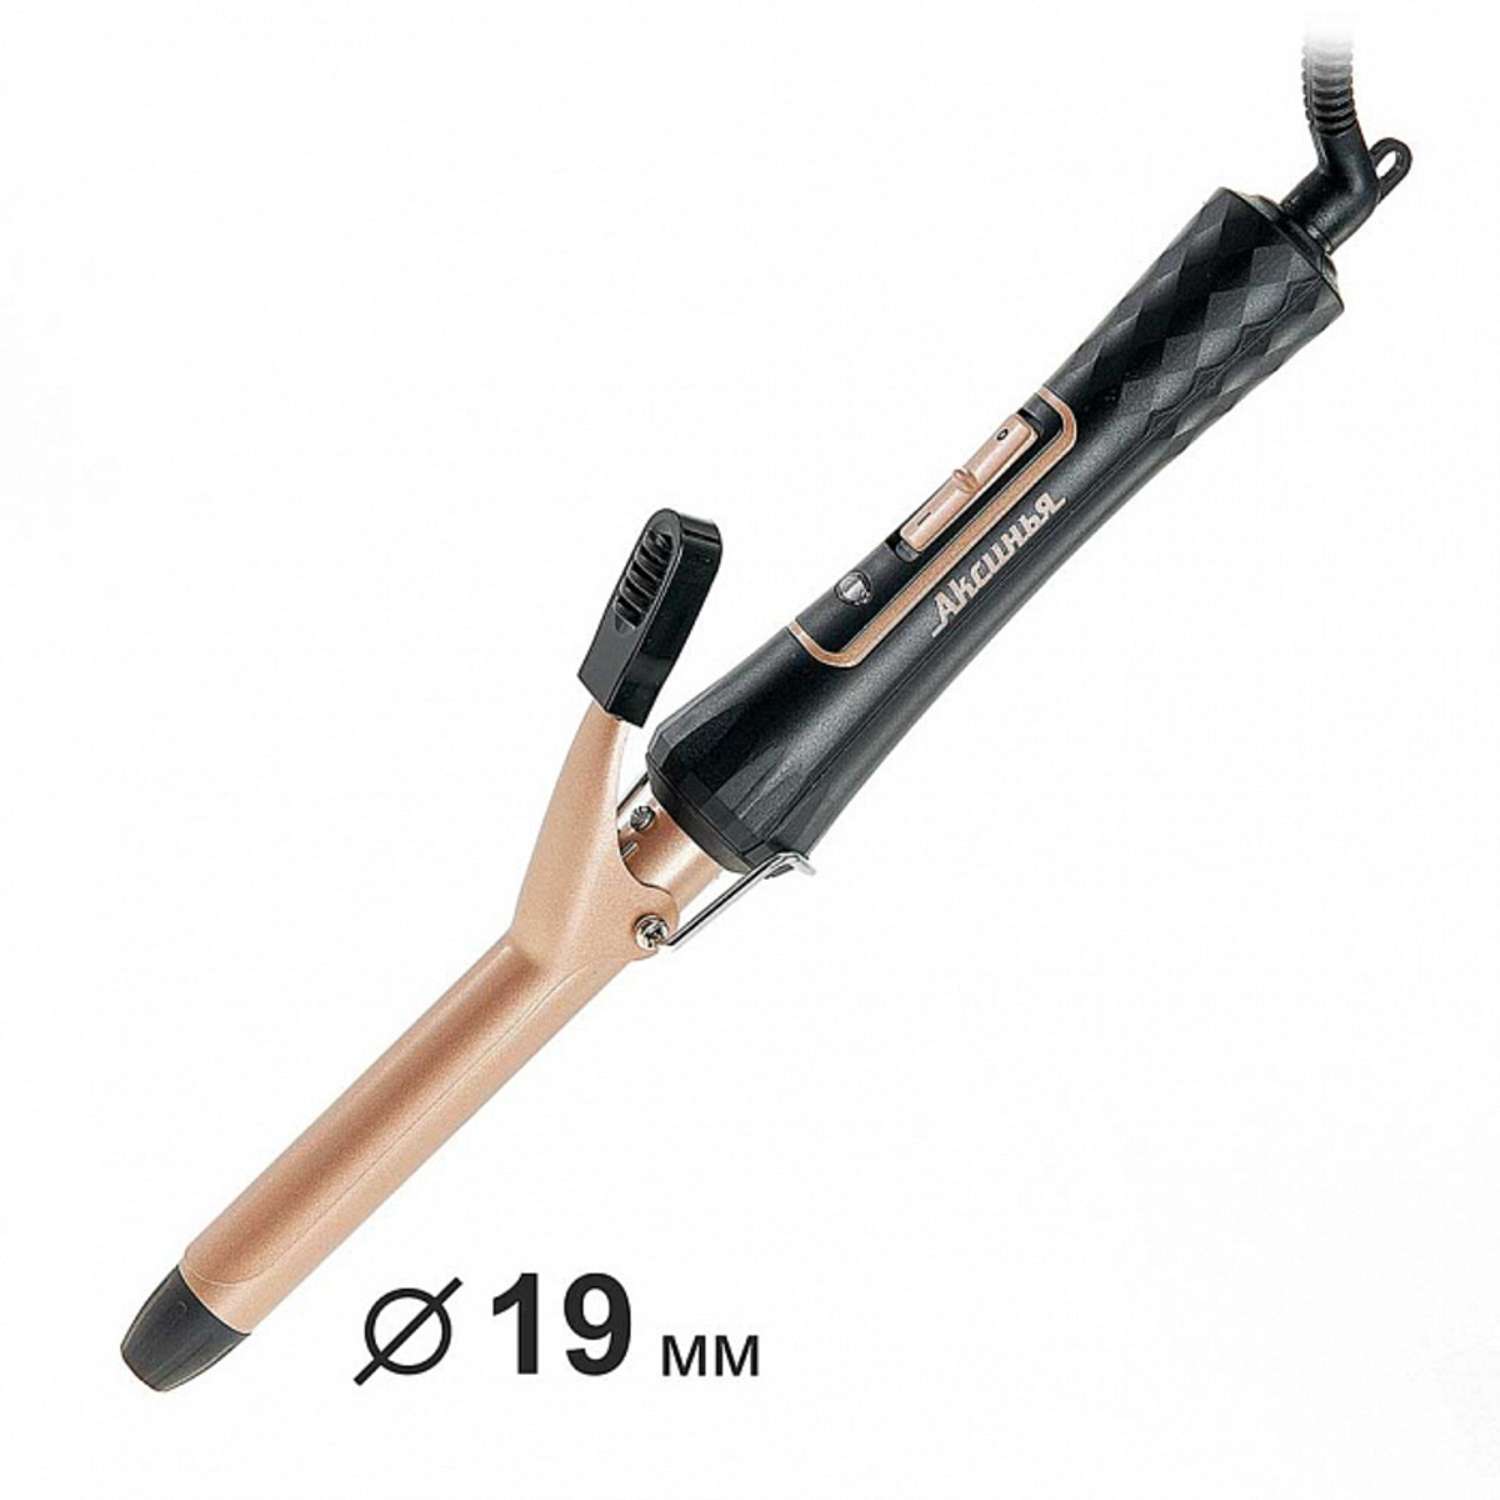 Стайлер для завивки волос Аксинья КС-804 черный с золотым керамическое покрытие d 19 мм 35 Вт - фото 1